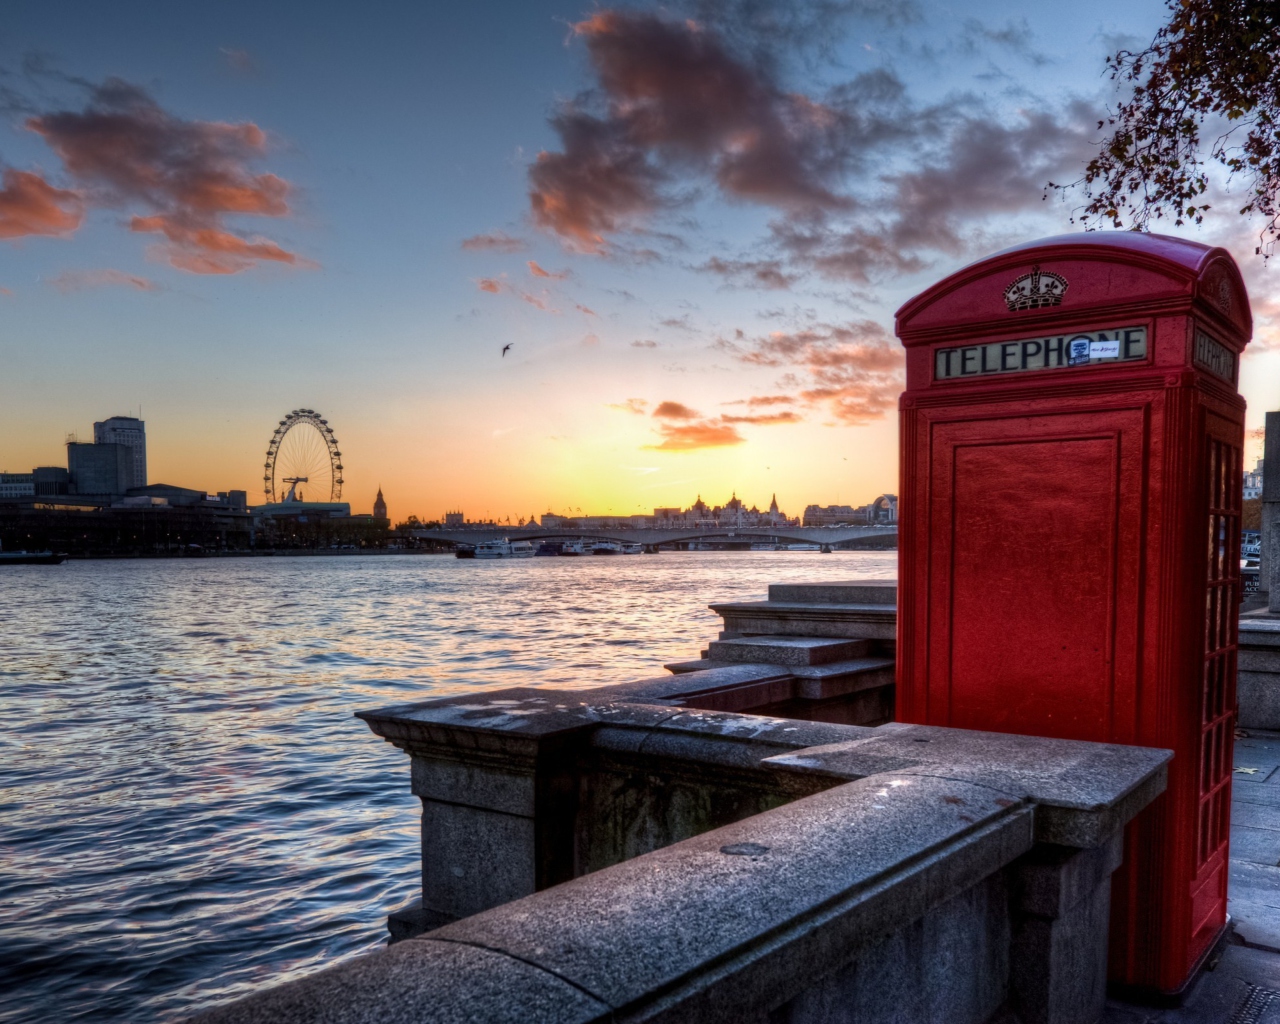 Sfondi England Phone Booth in London 1280x1024